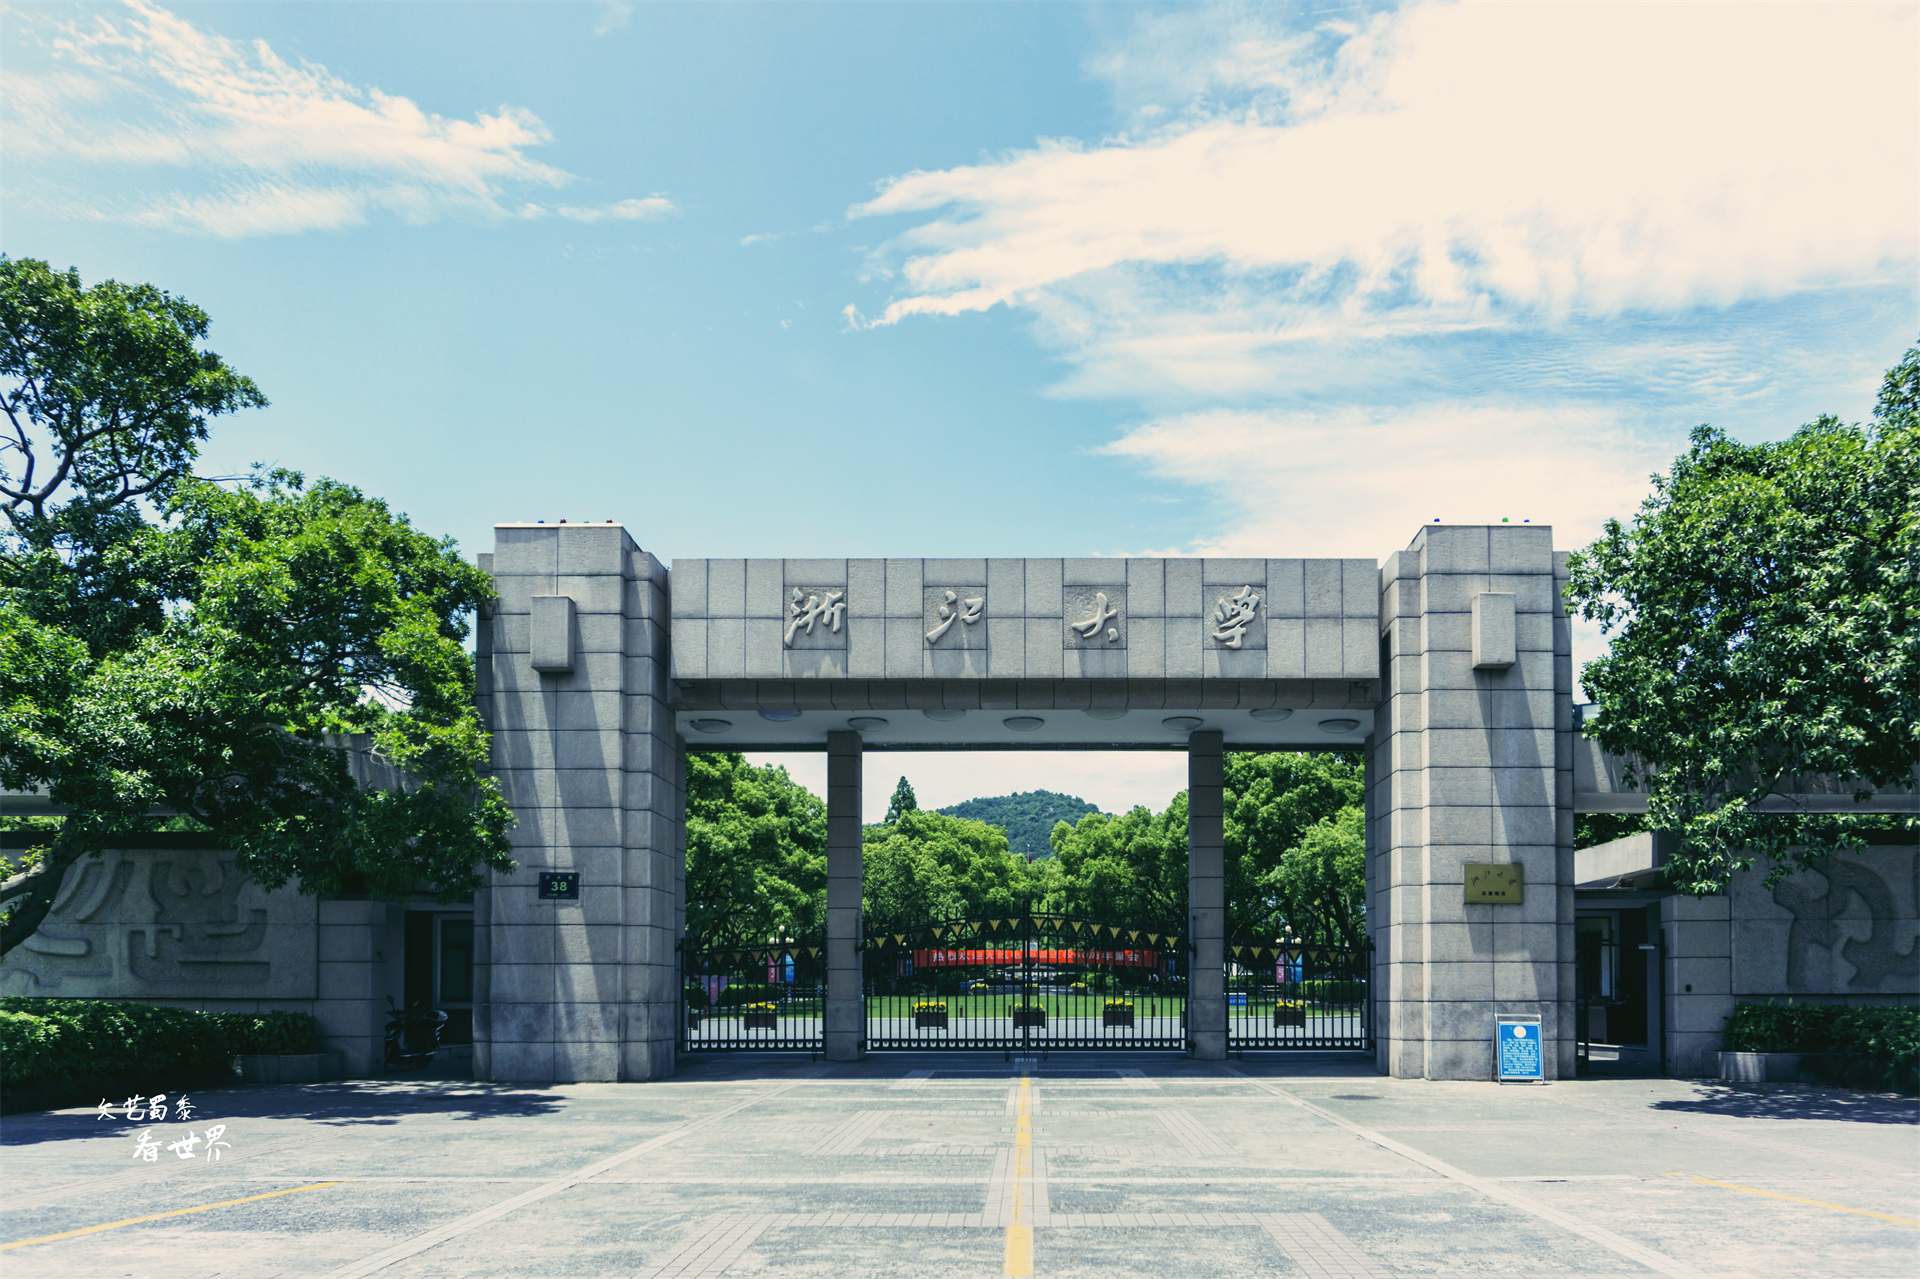 浙江大学地处人间天堂杭州,校区处于丘陵台地之上,是一座隐匿在山坡